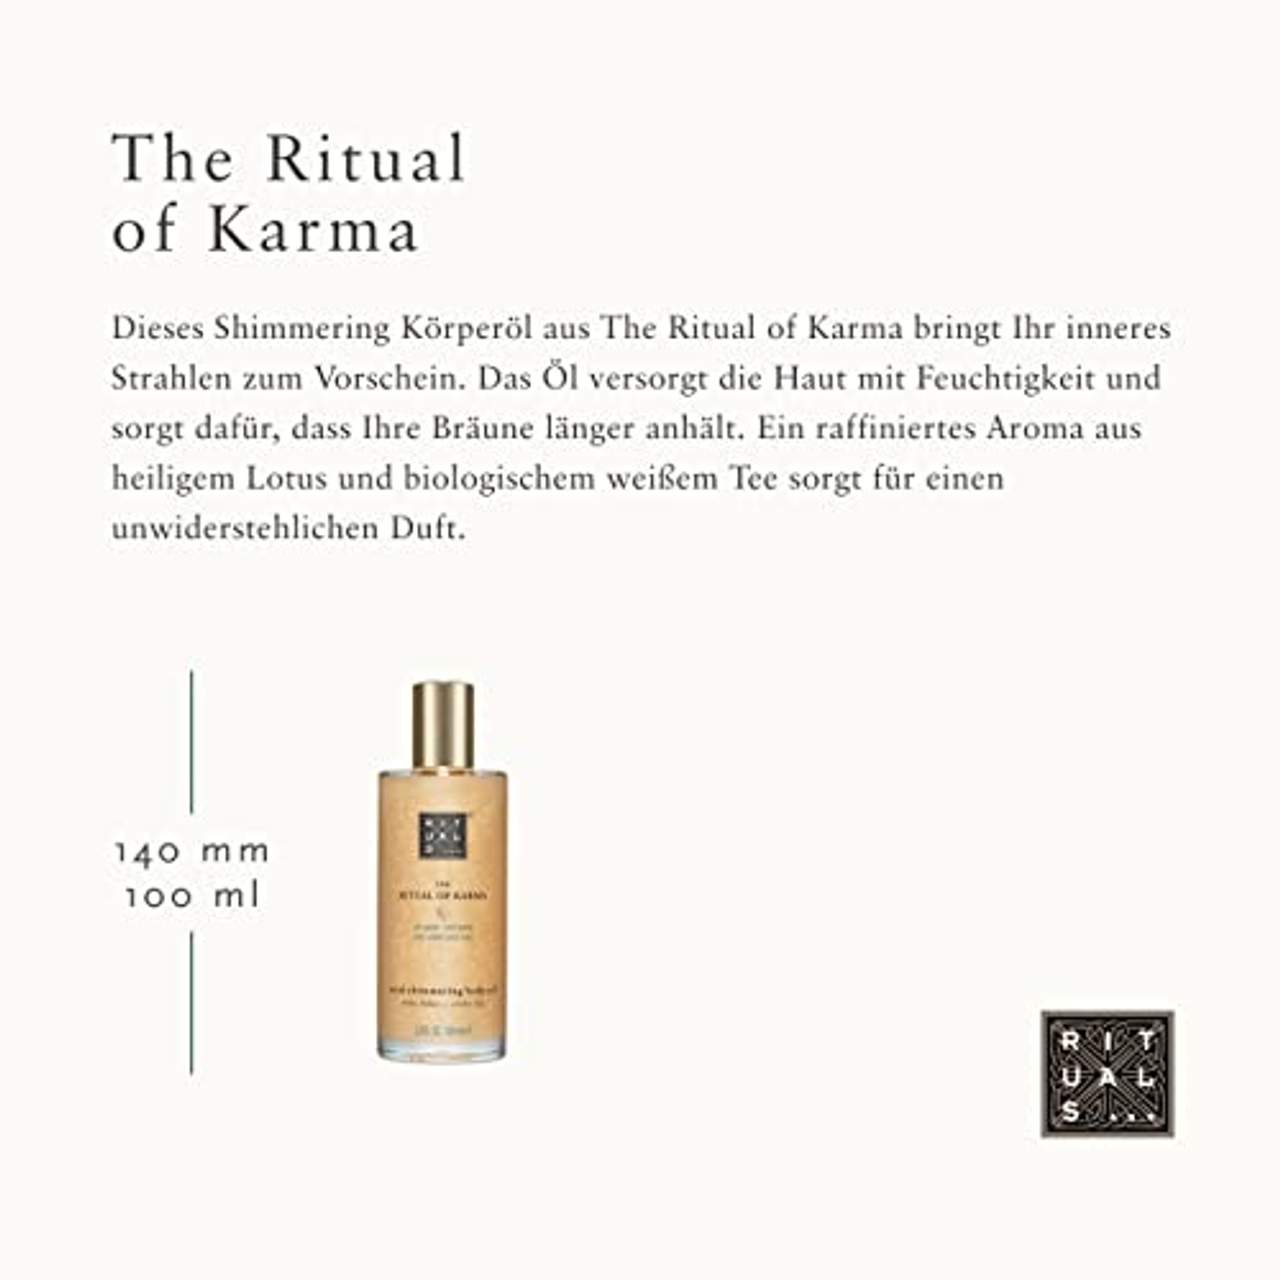 RITUALS Das Ritual des Karmas Seele Schimmernd Körperöl